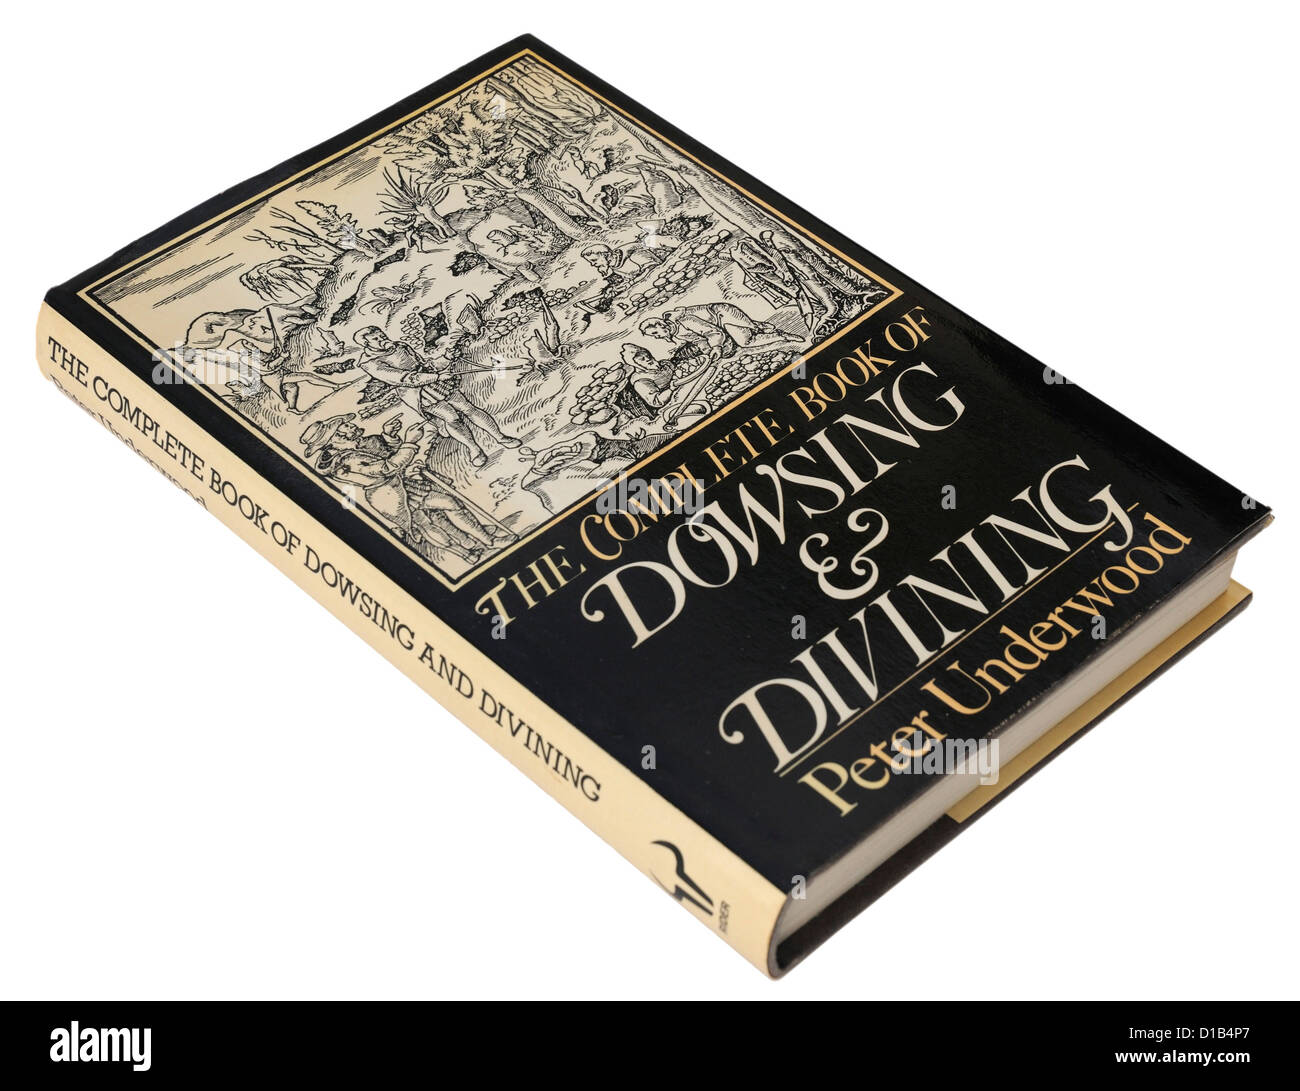 Das komplette Buch der Radiästhesie und Wünschelrute von Peter Underwood Stockfoto